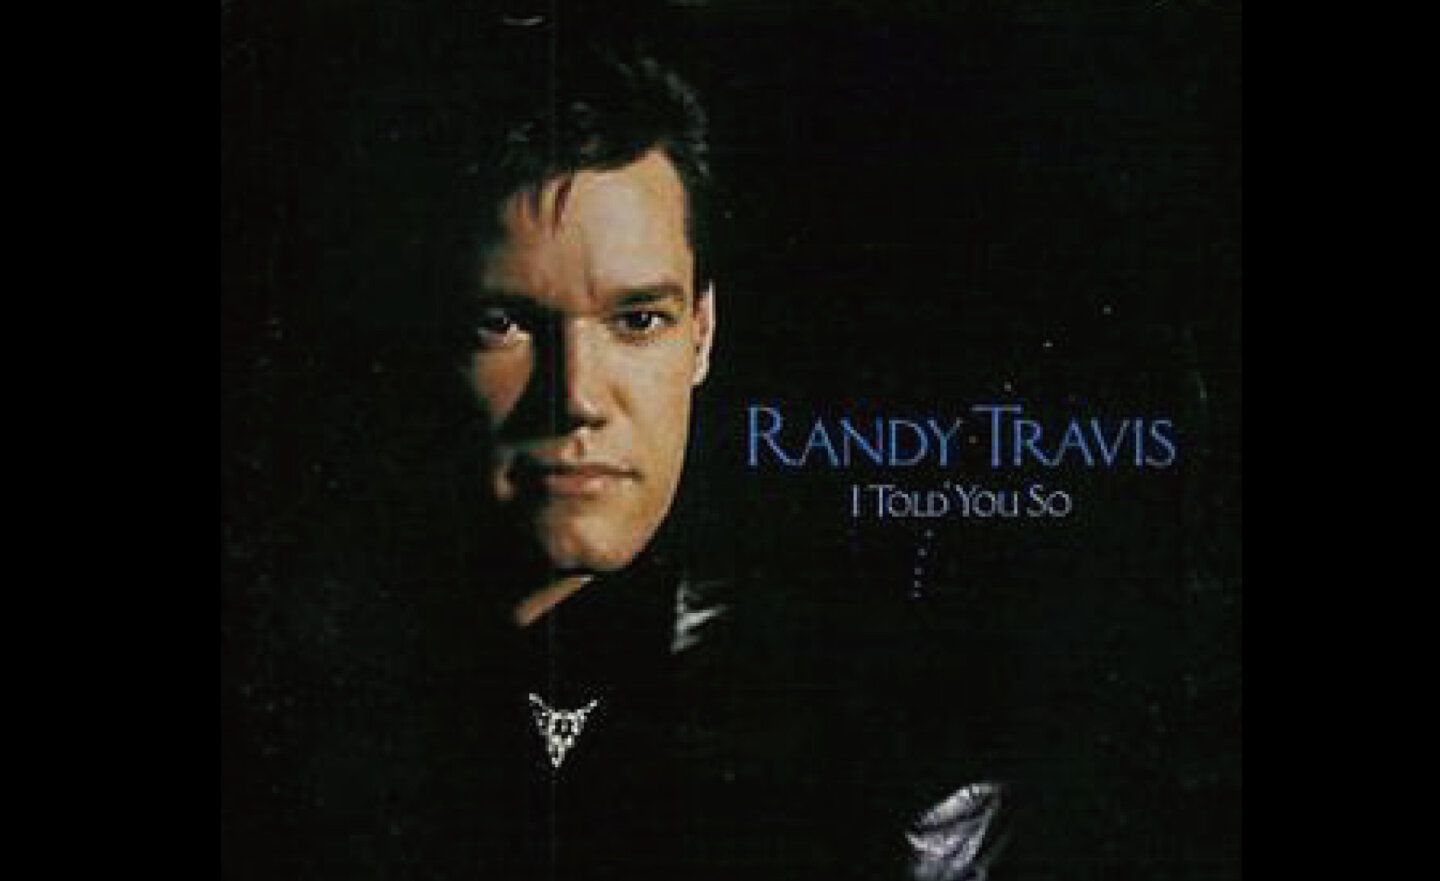 失聲的美國鄉村歌手 Randy Travis 透過華納音樂的 AI 技術重現經典歌聲